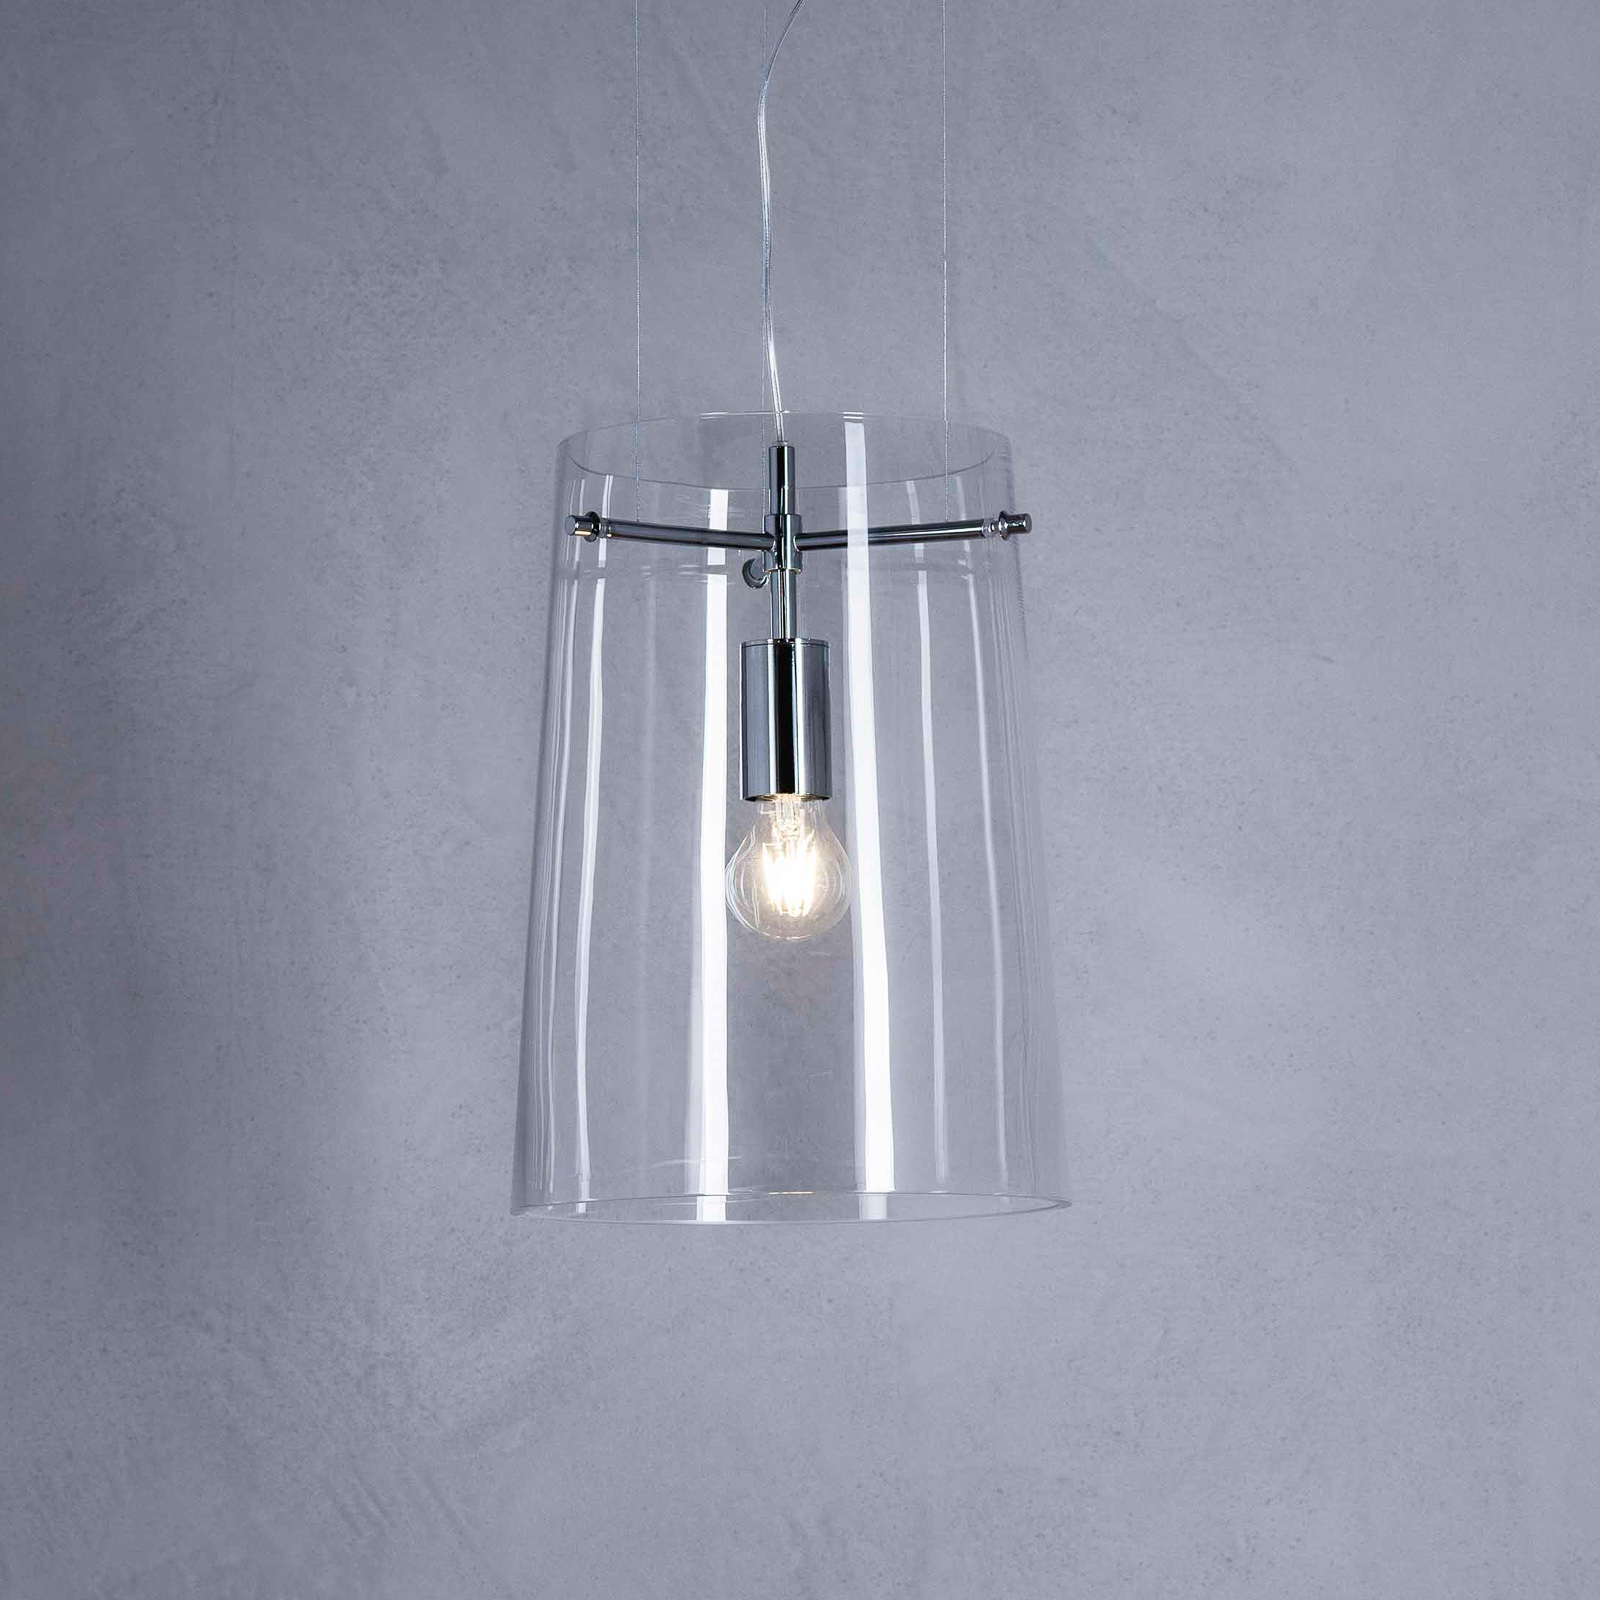 Prandina Sera S3 hanglamp, helder, Ø 33 cm